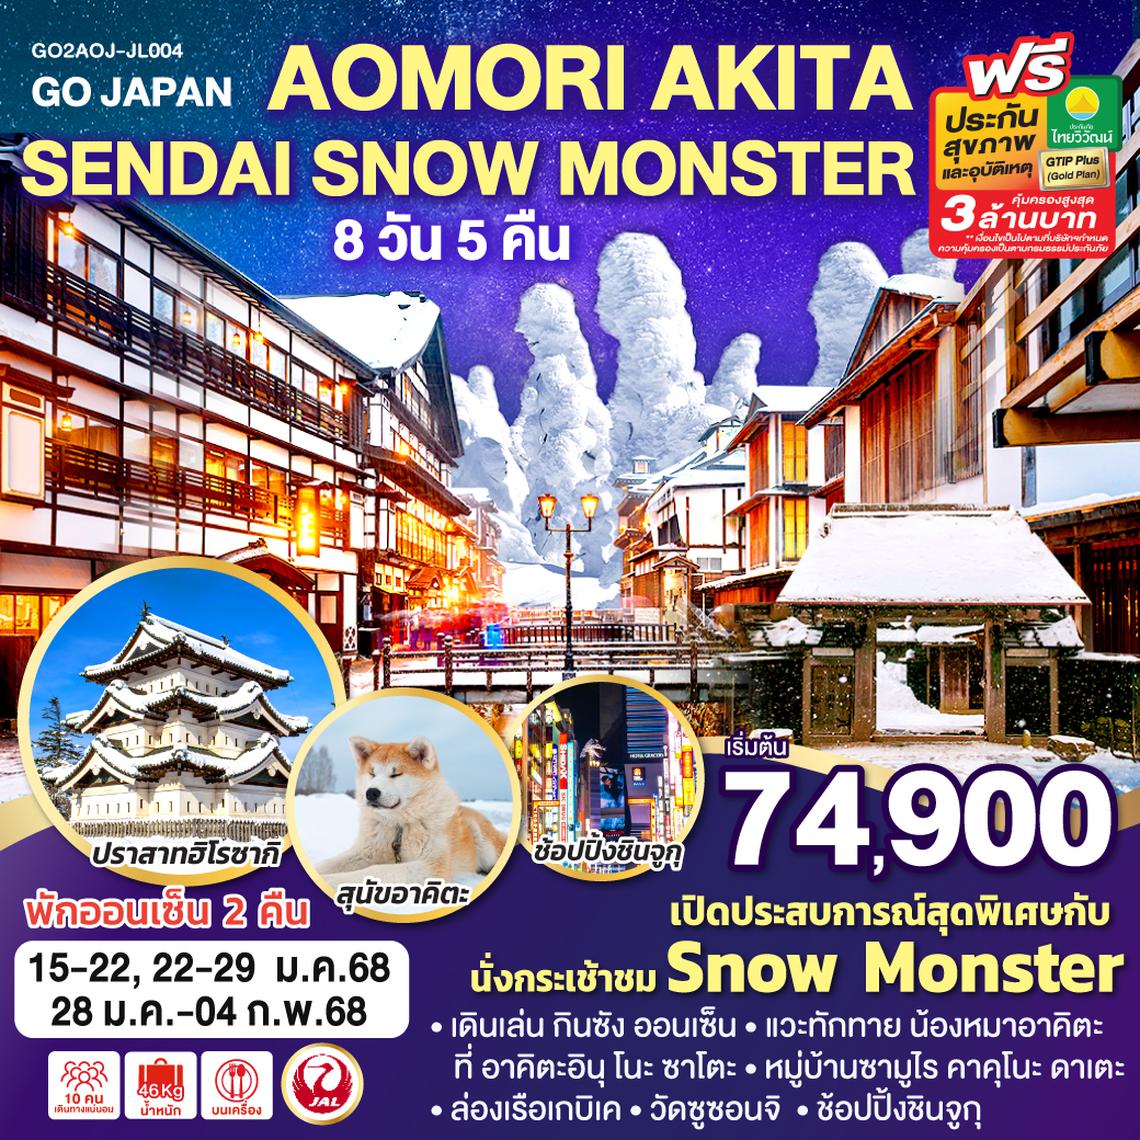 ทัวร์ญี่ปุ่น AOMORI AKITA SENDAI SNOW MONSTER 8D 5N